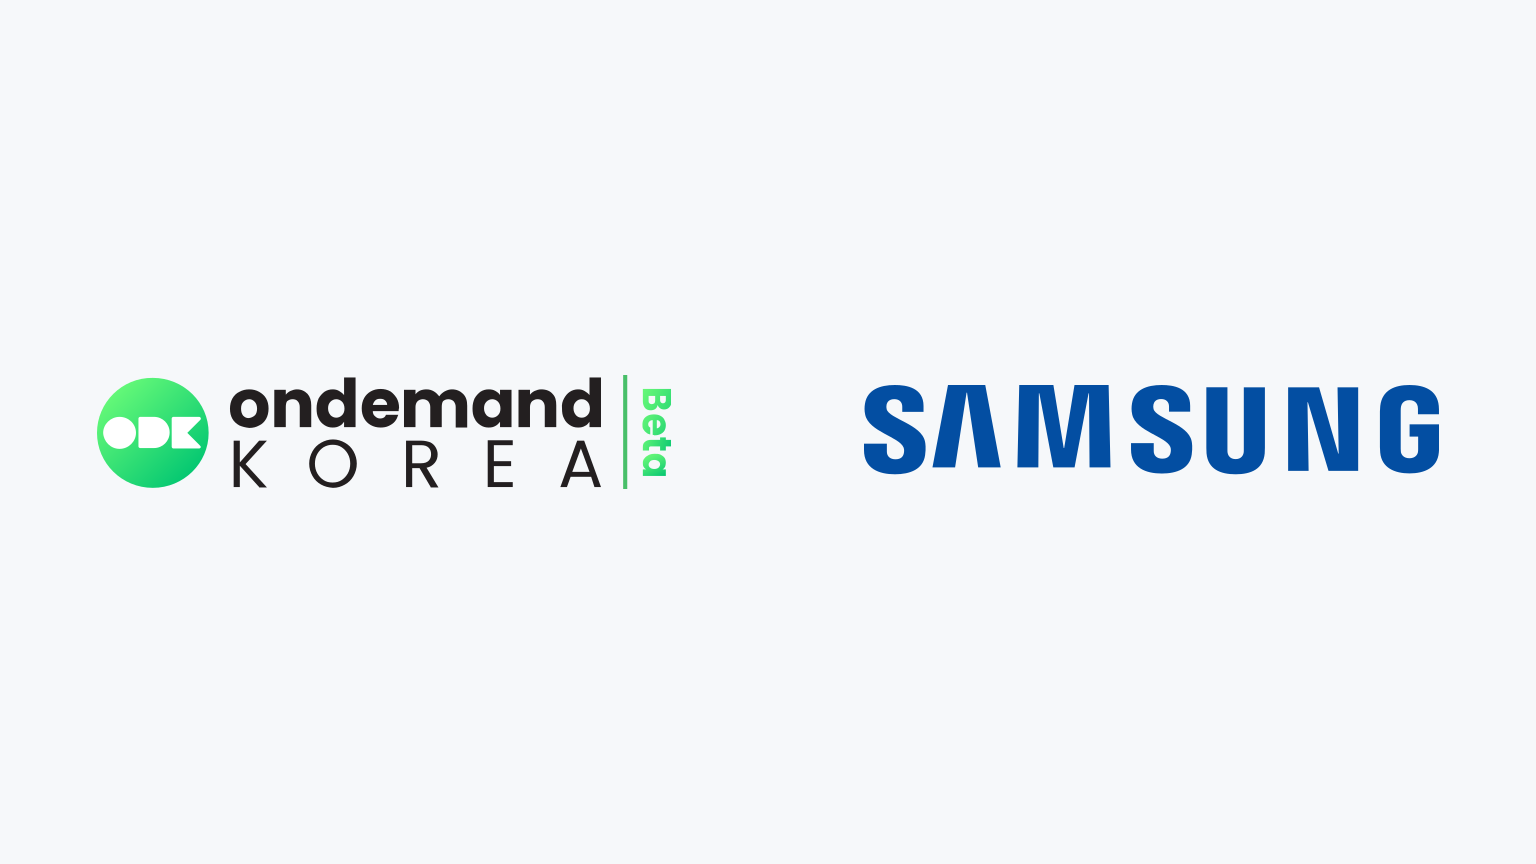 How to Watch OnDemandKorea on Samsung Smart TV